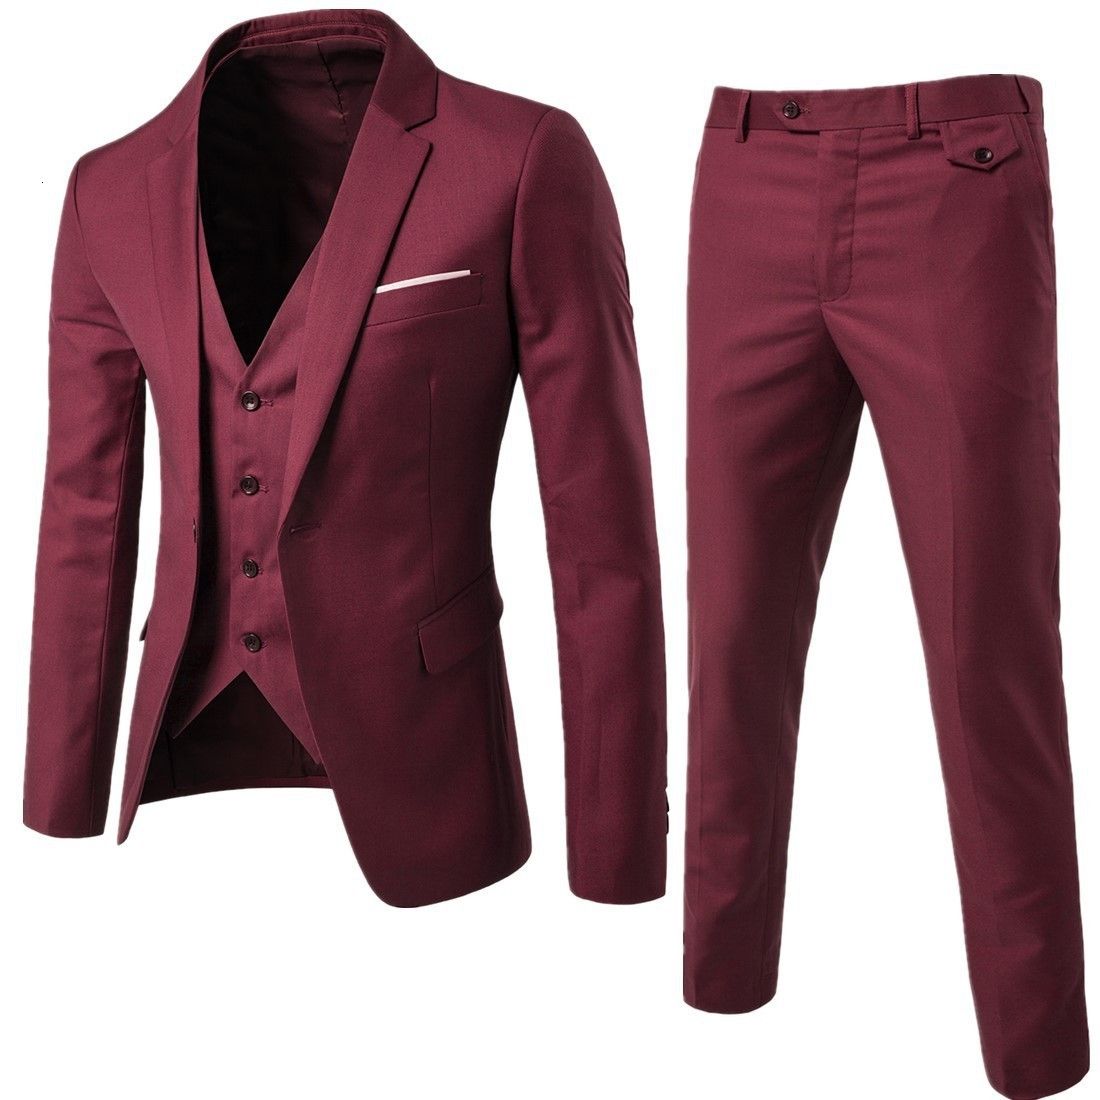 claret 3-piece suit